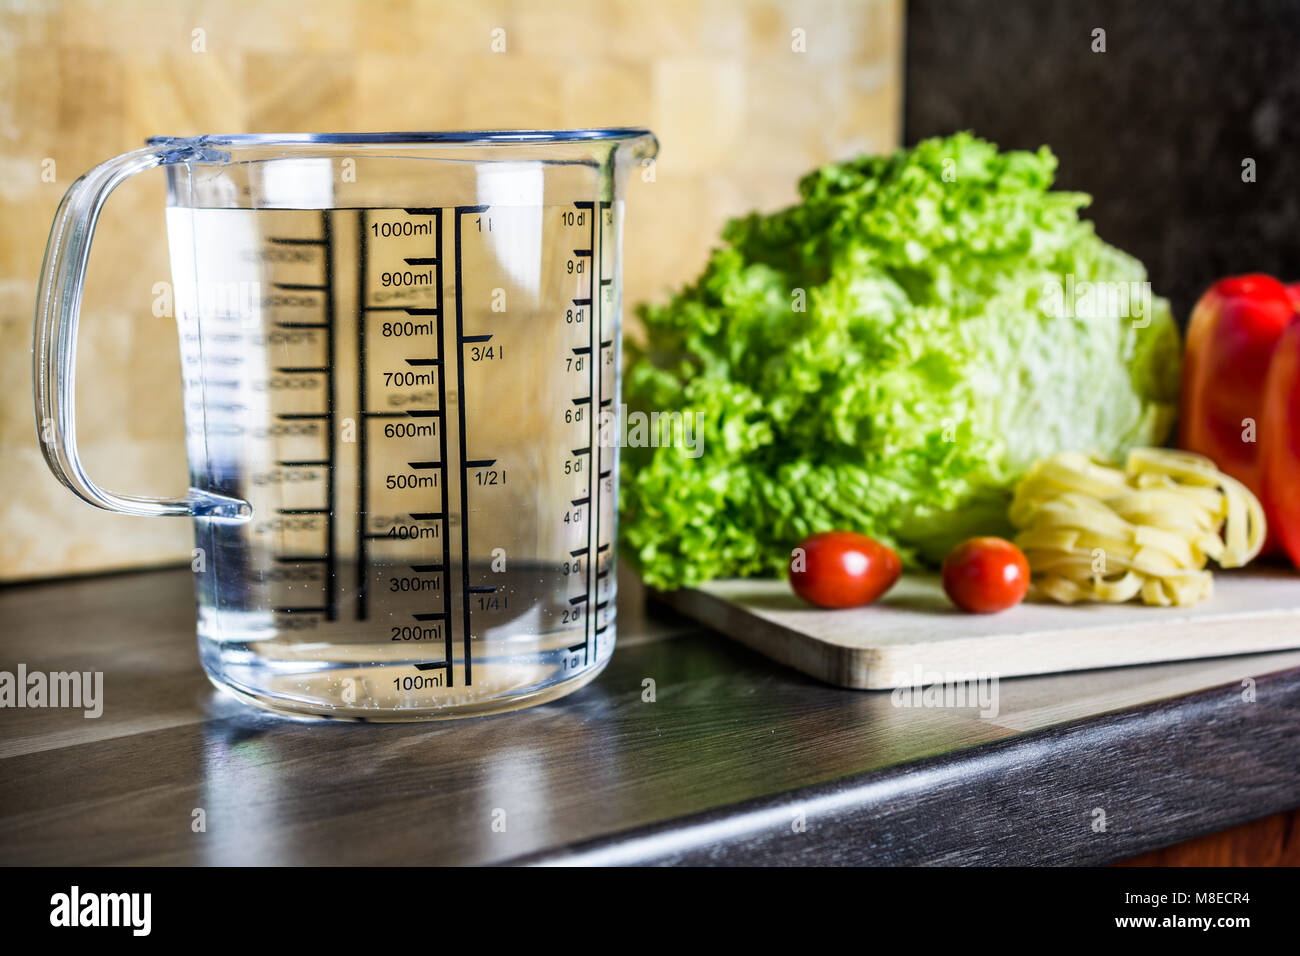 1000ccm / 1 litro / 1000ml di acqua in una coppa di misurazione su un banco di cucina con i prodotti alimentari Foto Stock